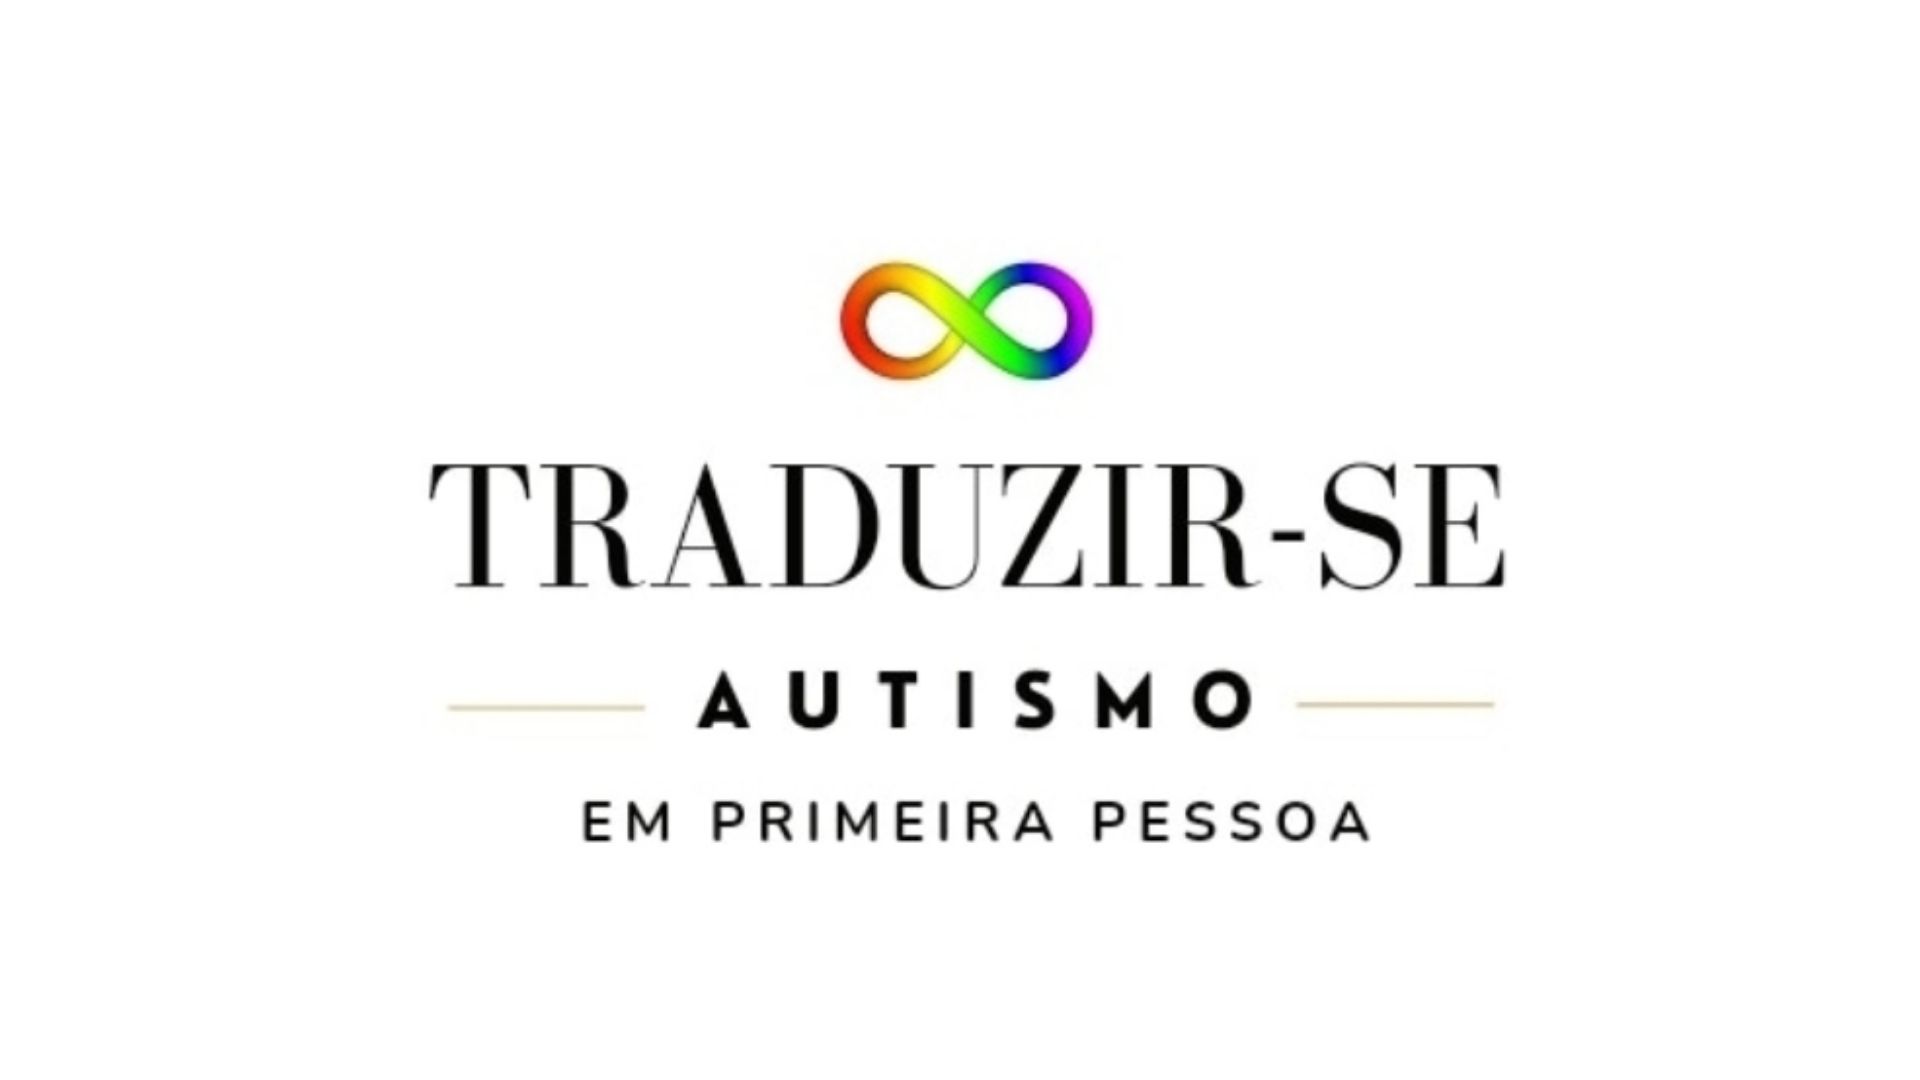 Grupo de estudos sobre autismo promove lives com autistas ativistas e pesquisadores — Canal Autismo / Revista Autismo